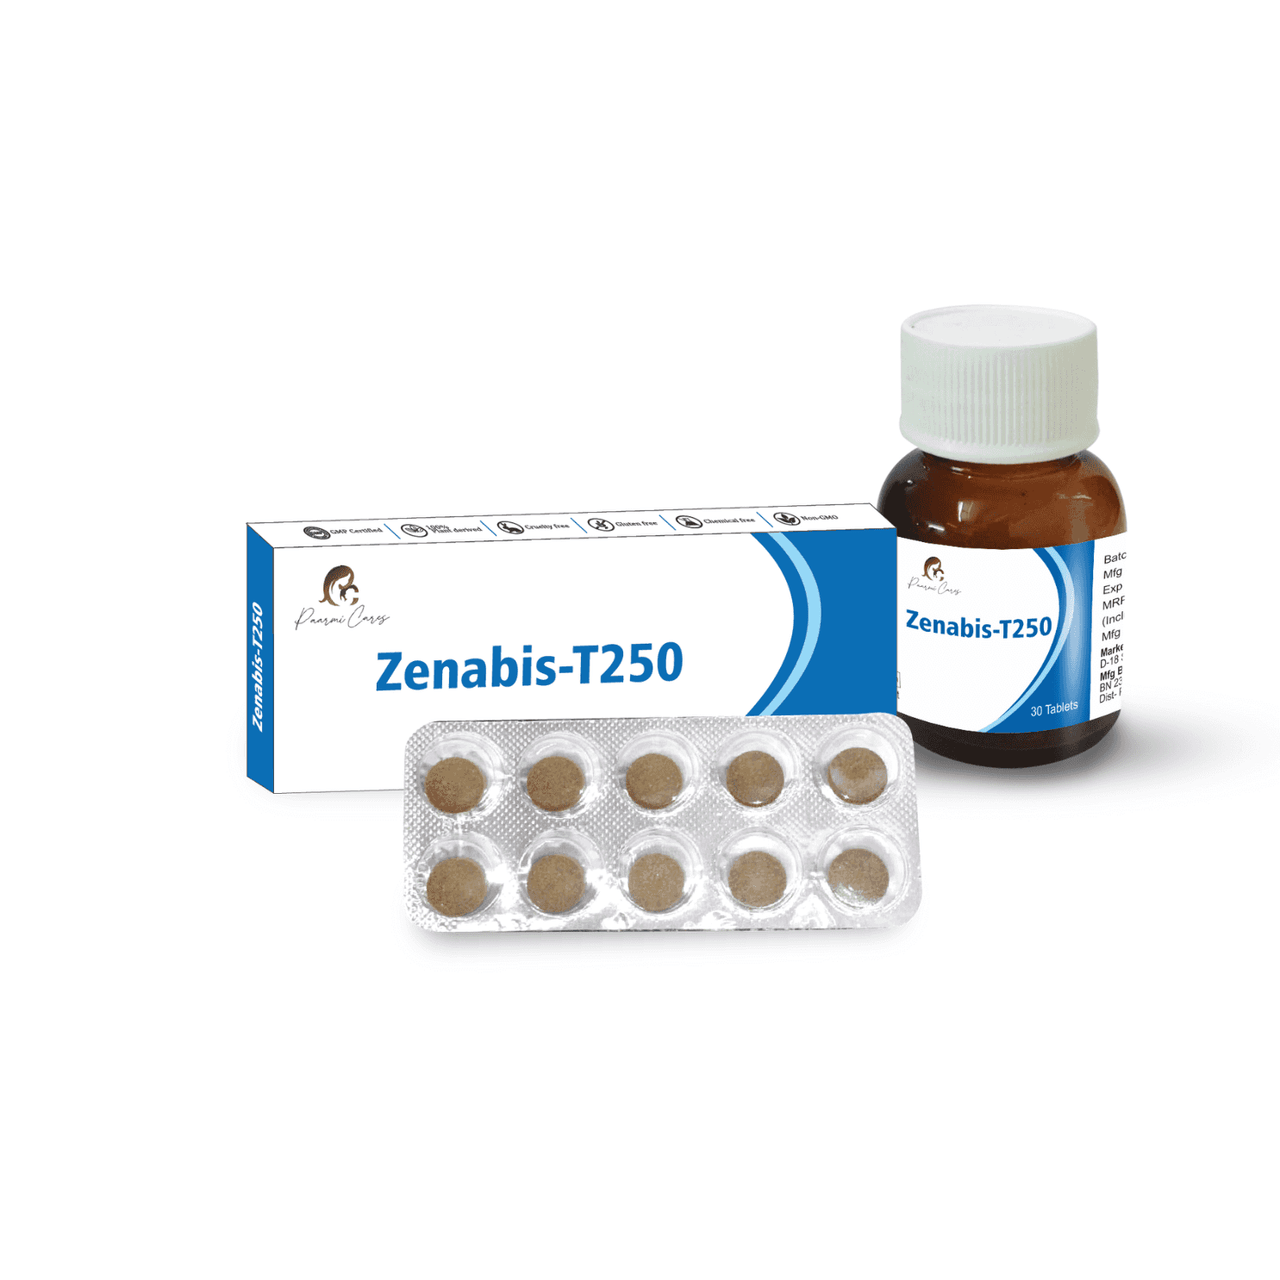 Paarmi Cares- Zenabis-T250 (For Depression)